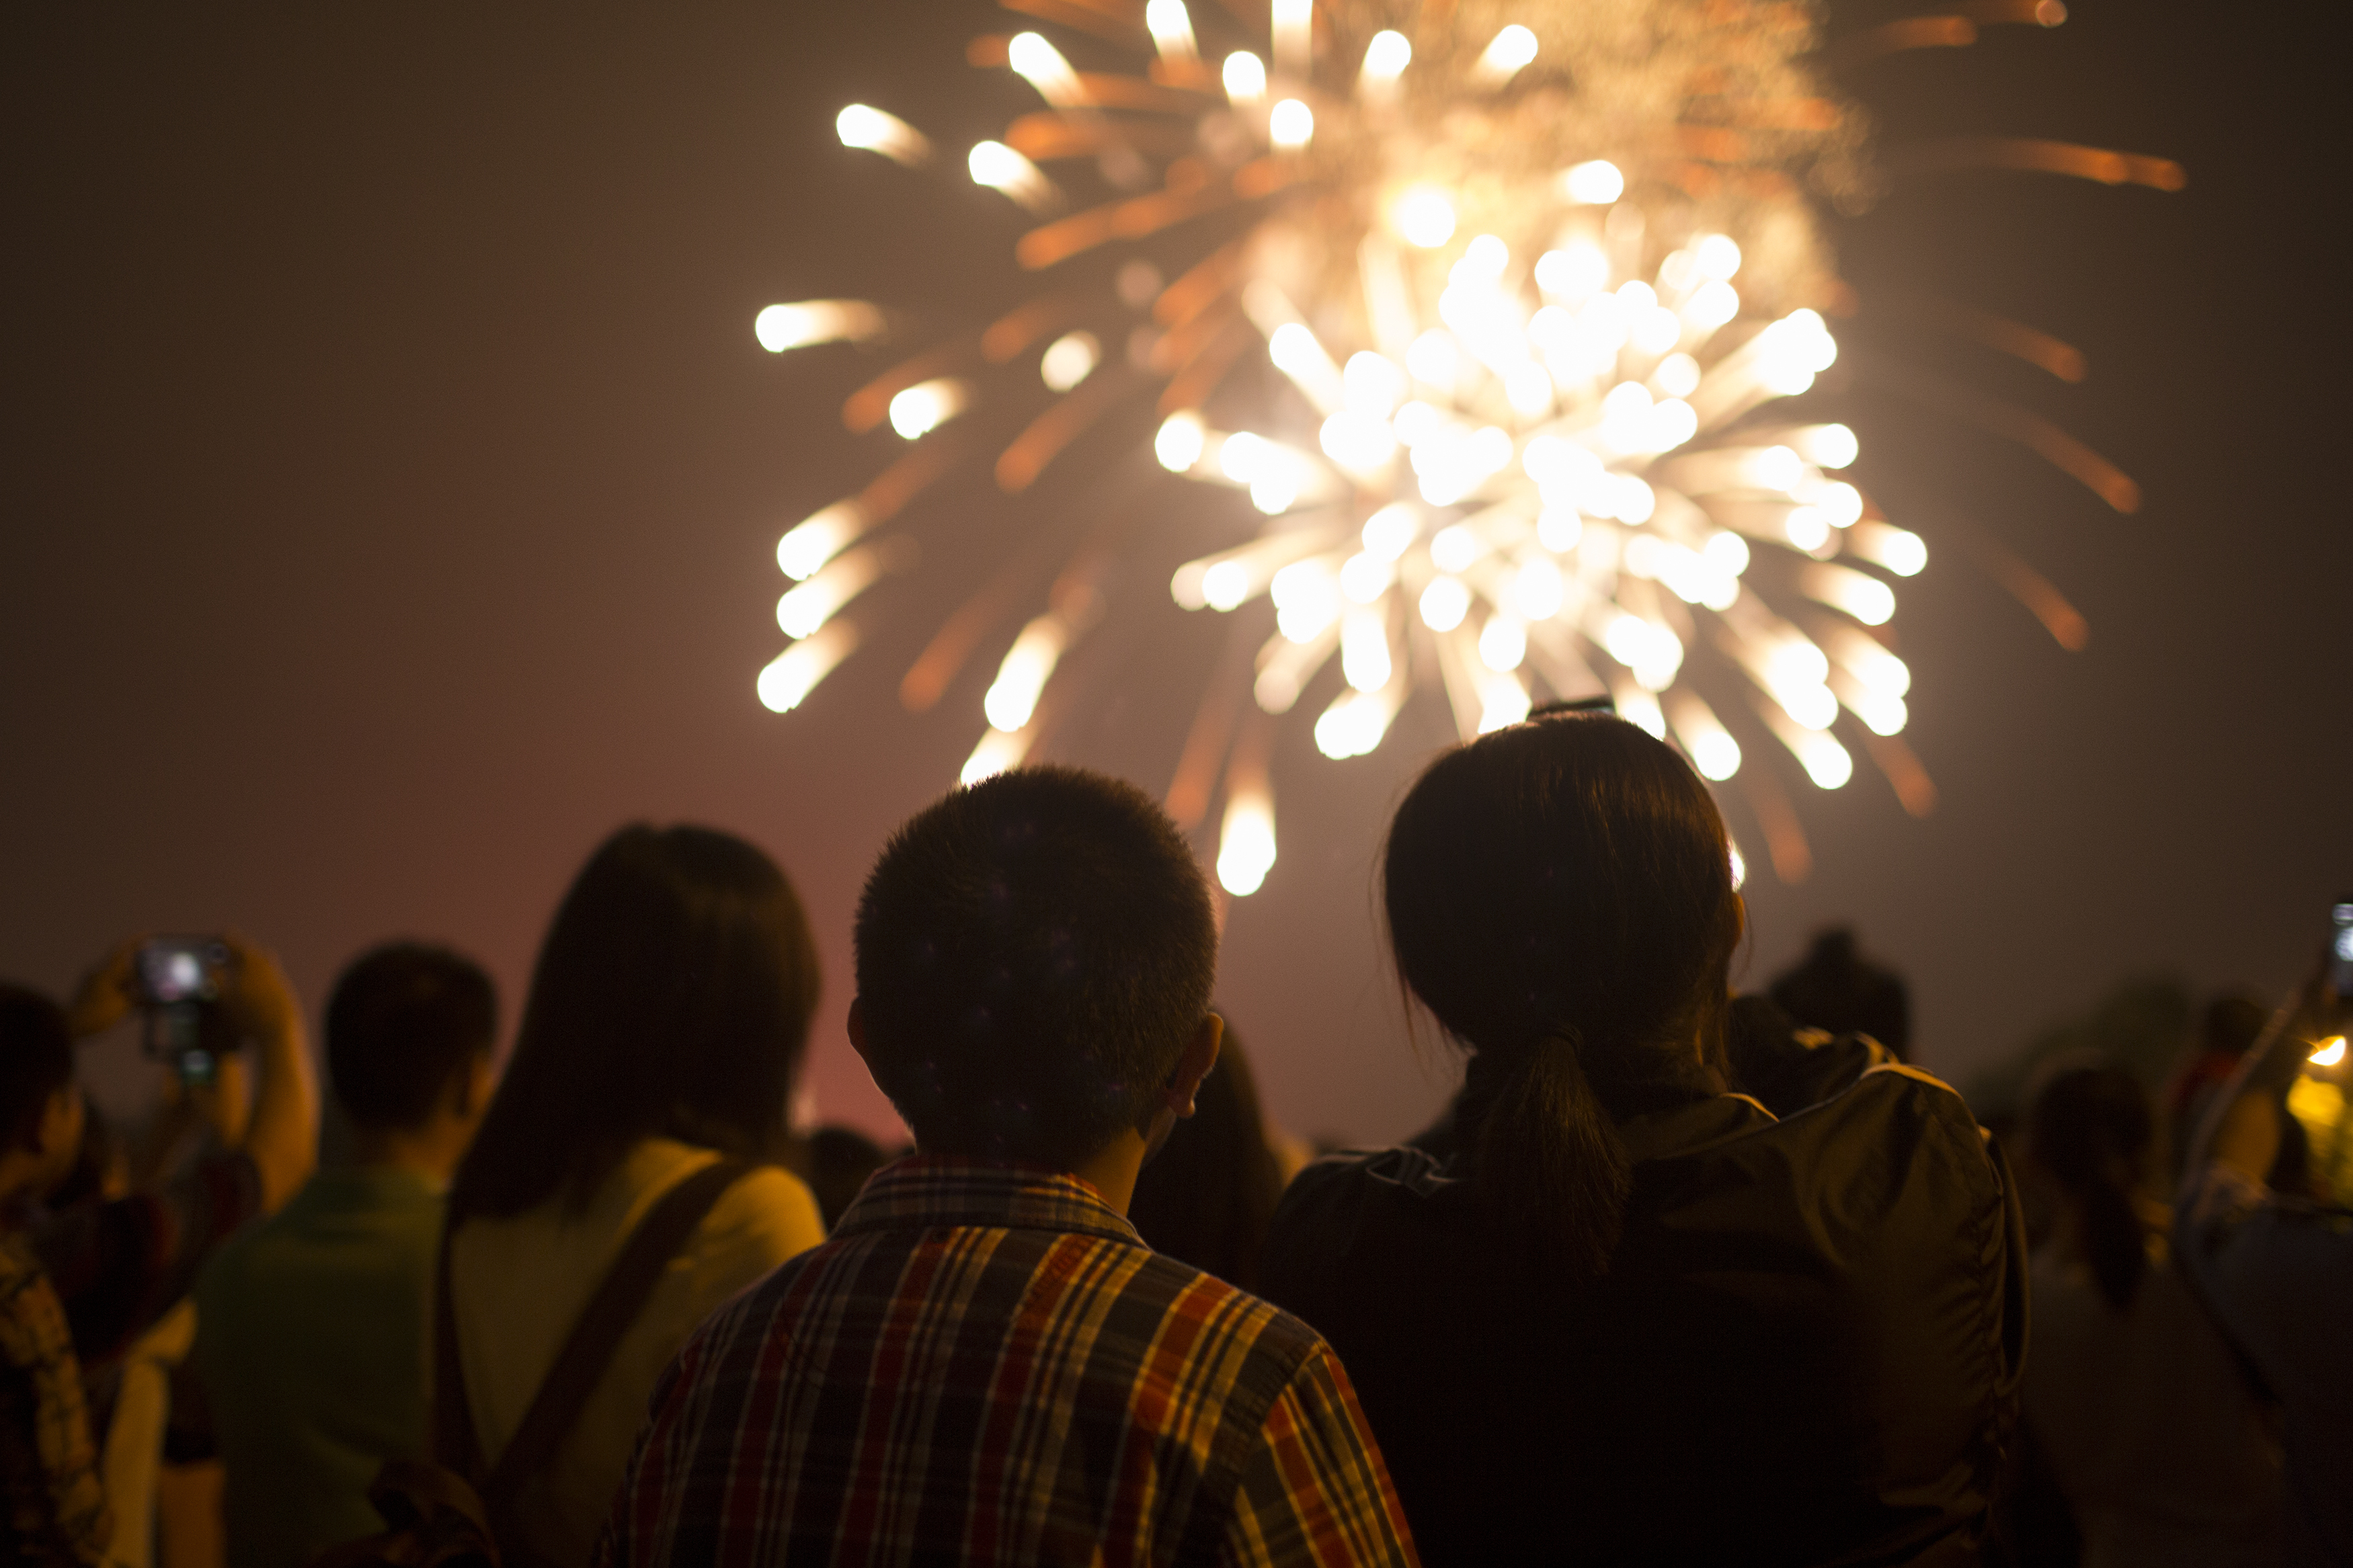 La celebración de año nuevo es una oportunidad para mejorar las vivencias del anterior. (Foto Prensa Libre: Shutterstock)